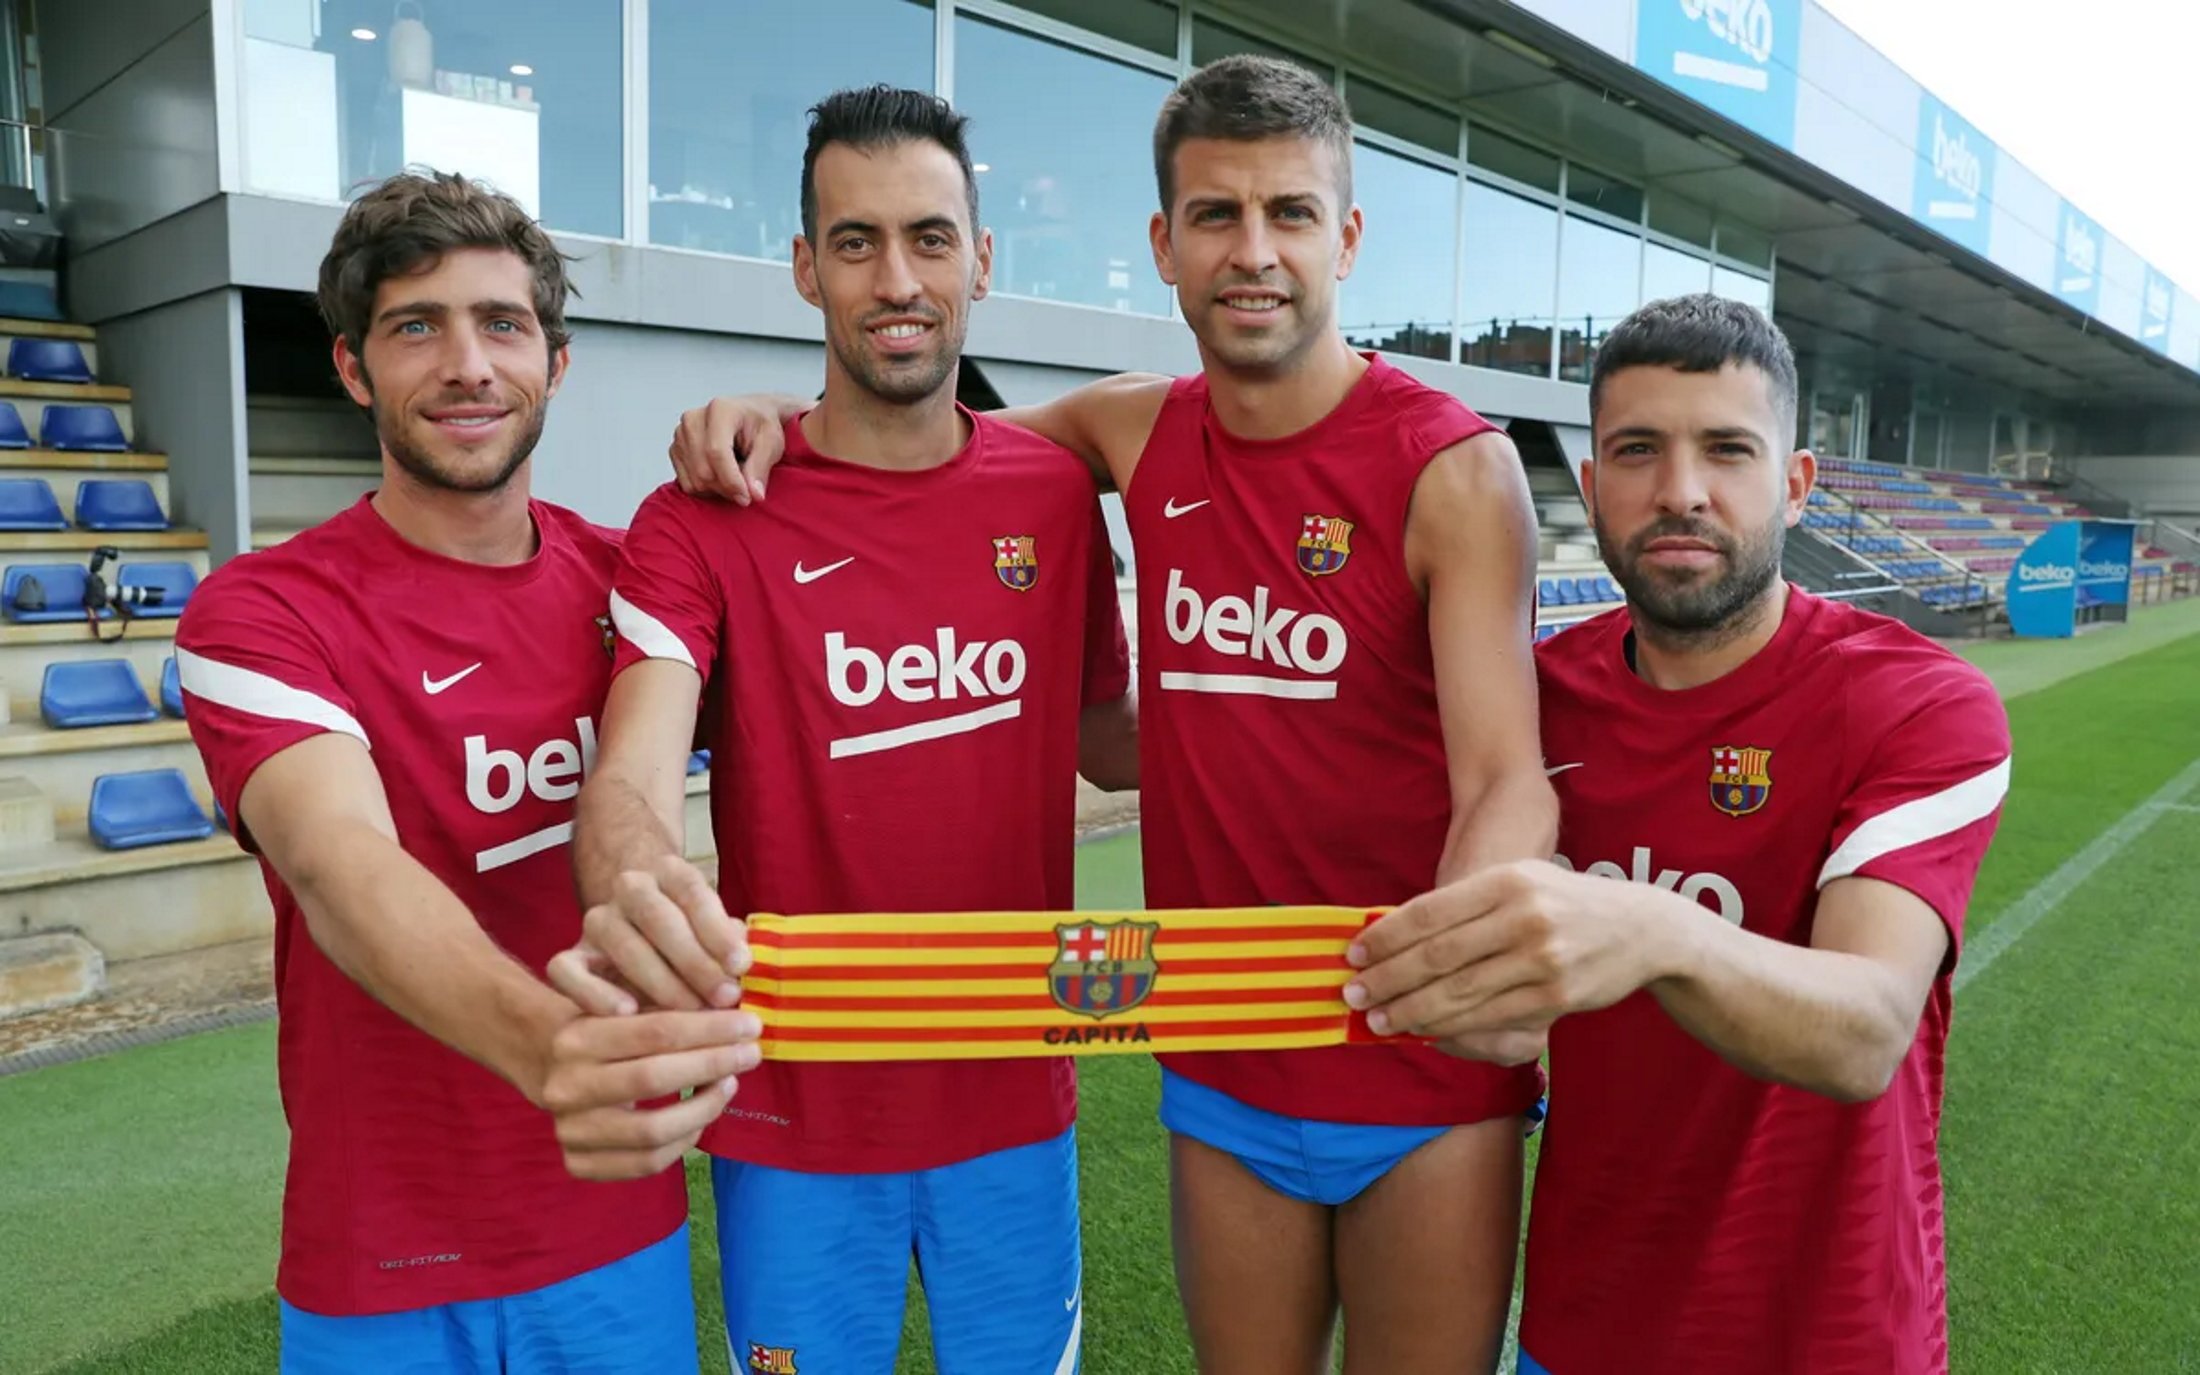 Li comunica a Piqué i als seus amics de vestidor que se'n va del Barça després de tota una vida: decisió presa